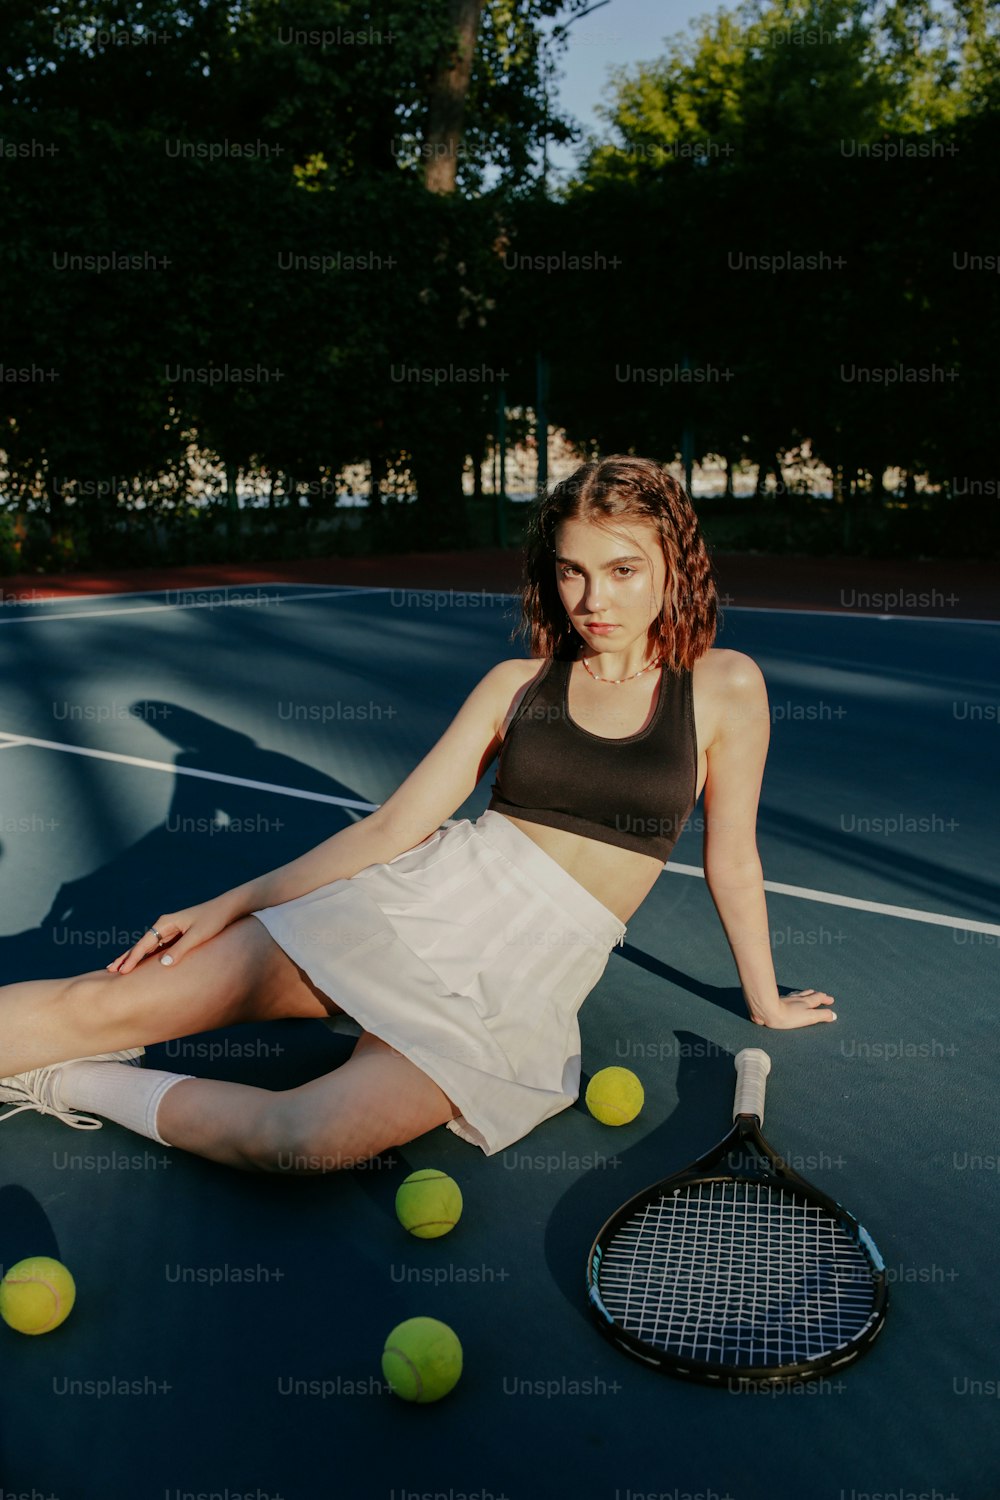 Una mujer sentada en una cancha de tenis sosteniendo una raqueta de tenis